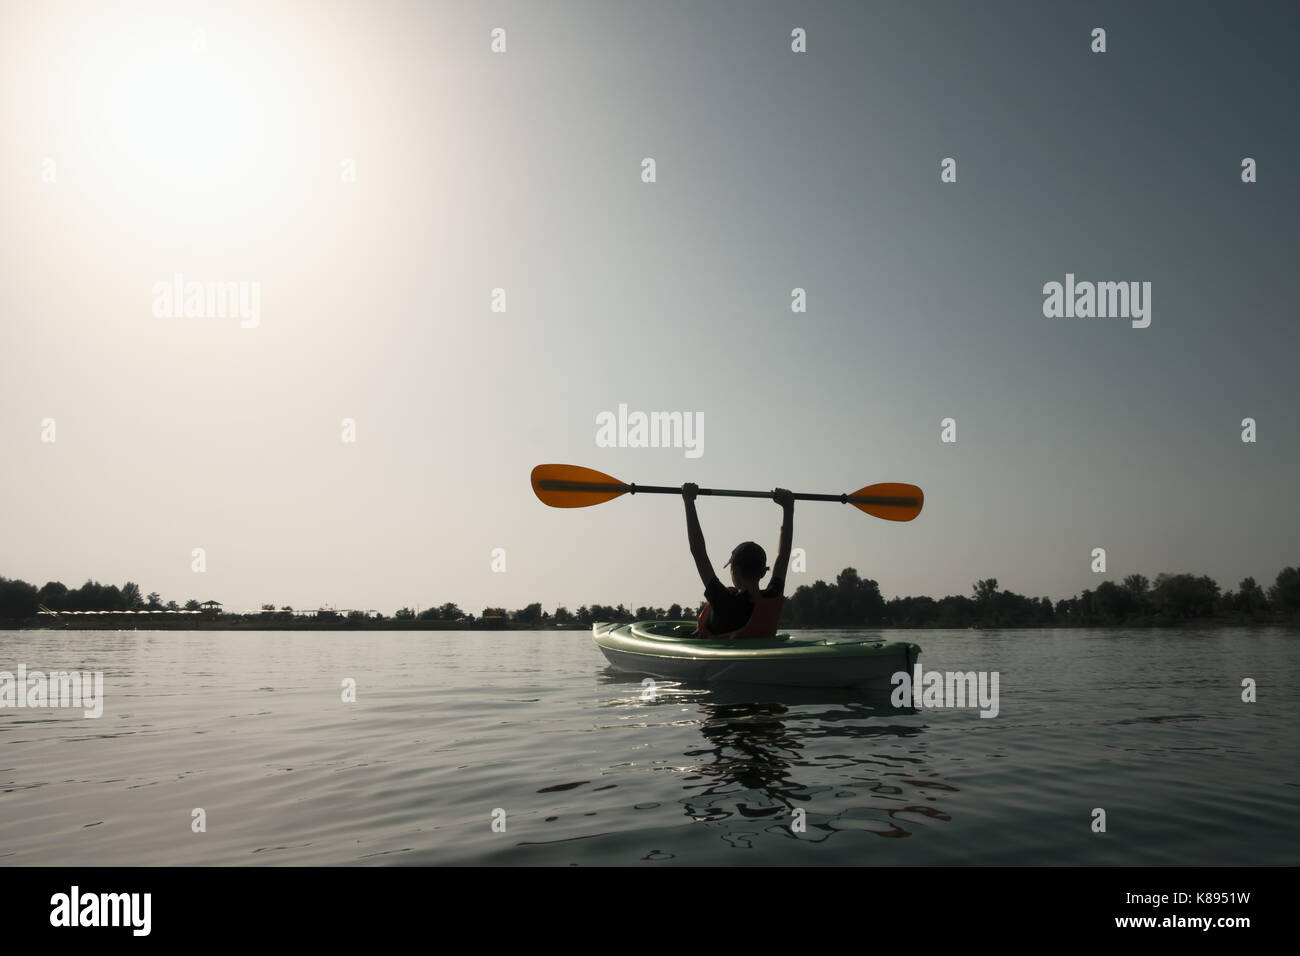 Garçon en veste verte sur kayak. journée ensoleillée sur le lac merveilleux. L'heure d'été Banque D'Images